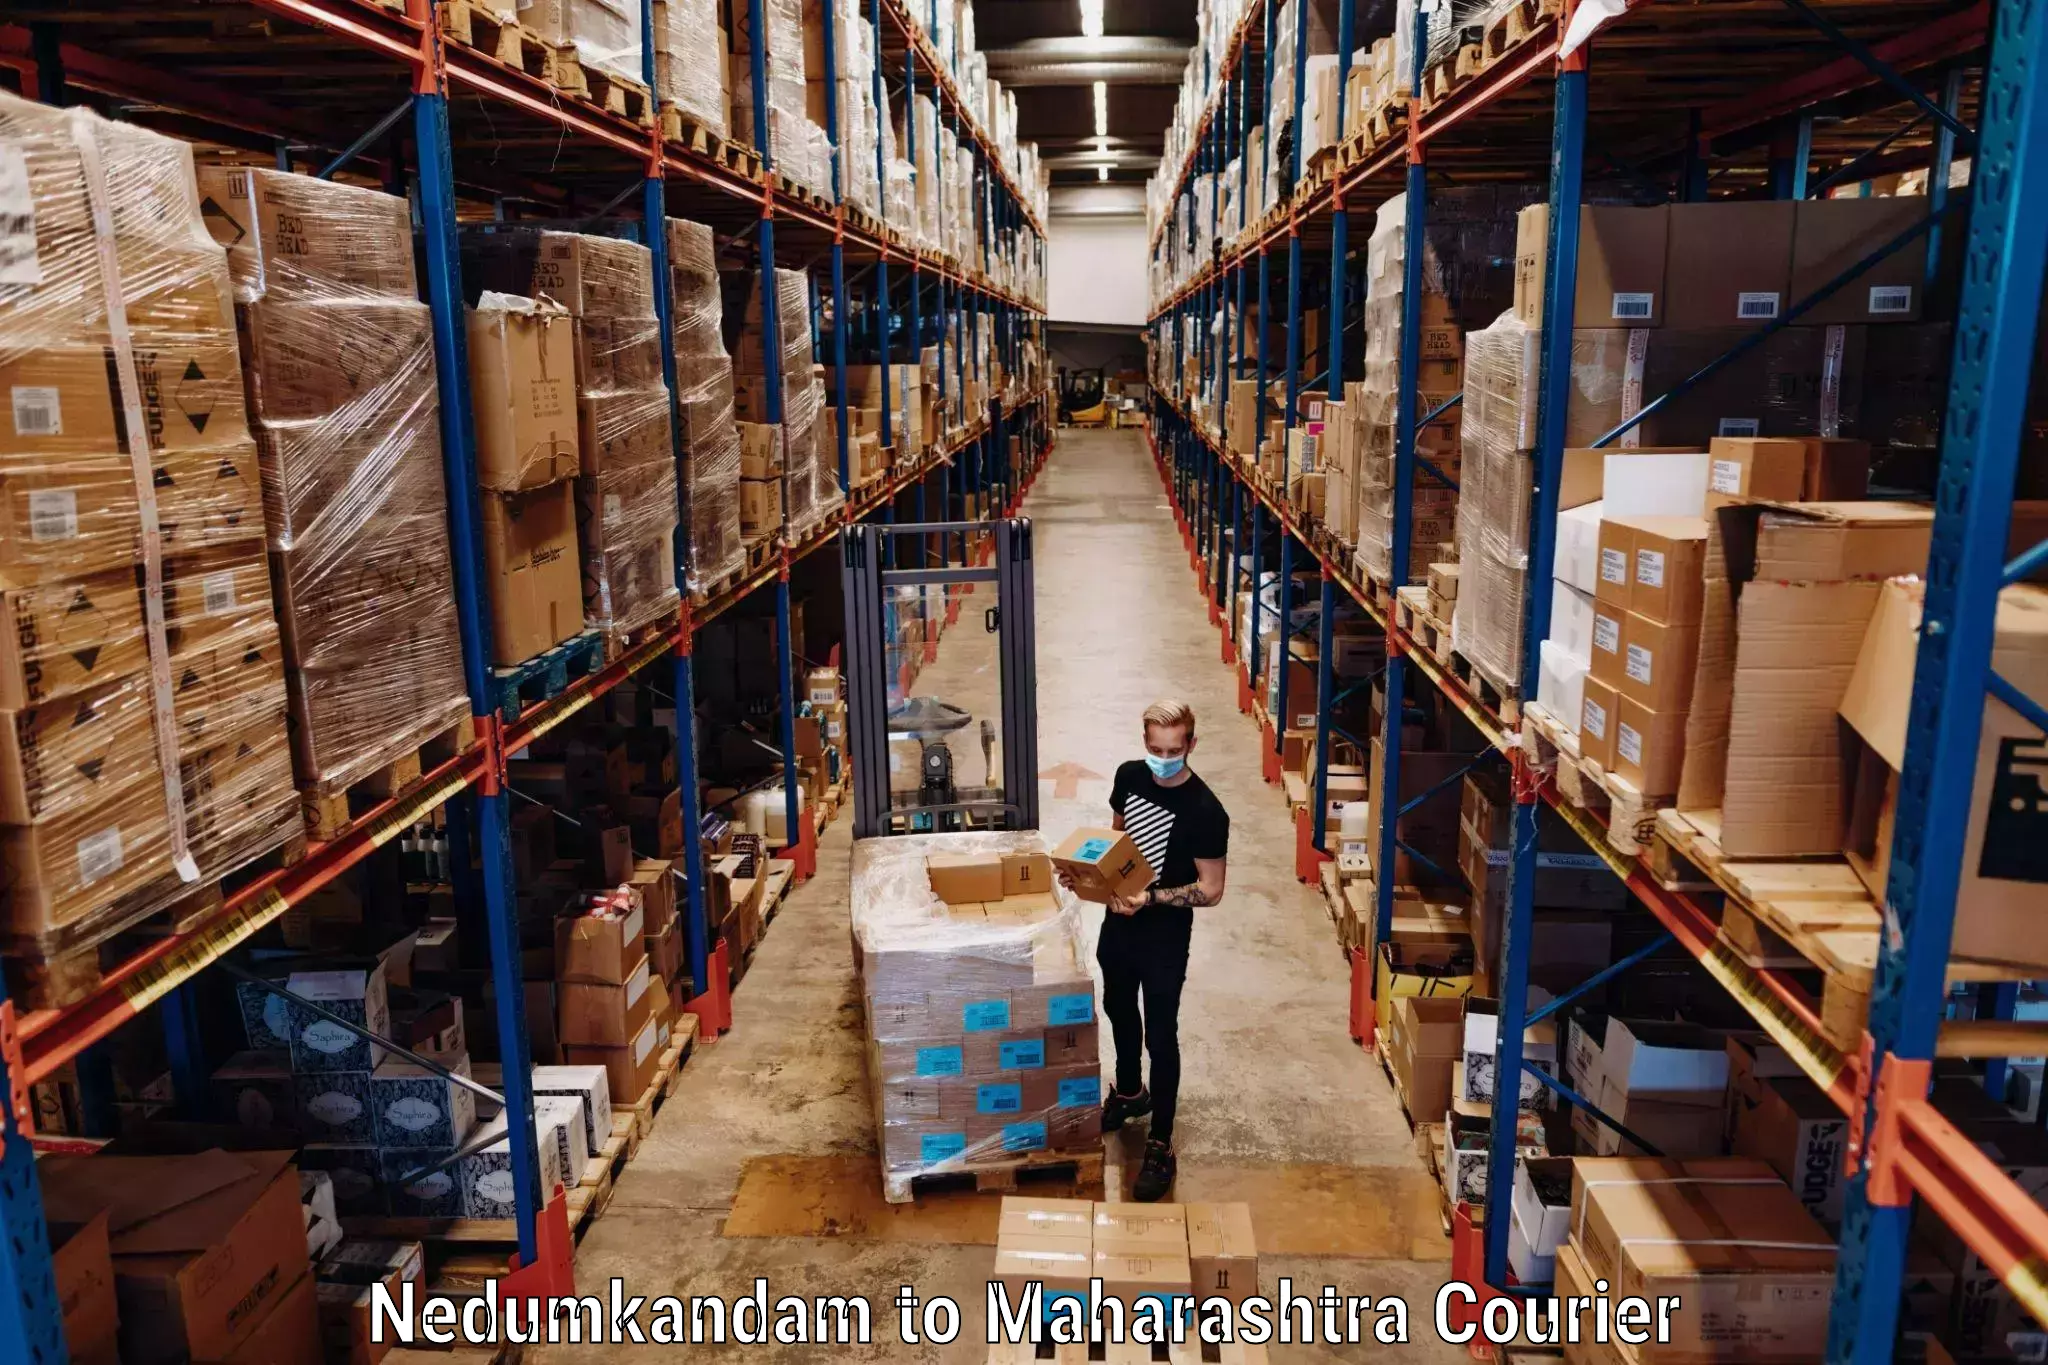 Luggage forwarding service Nedumkandam to Maharashtra